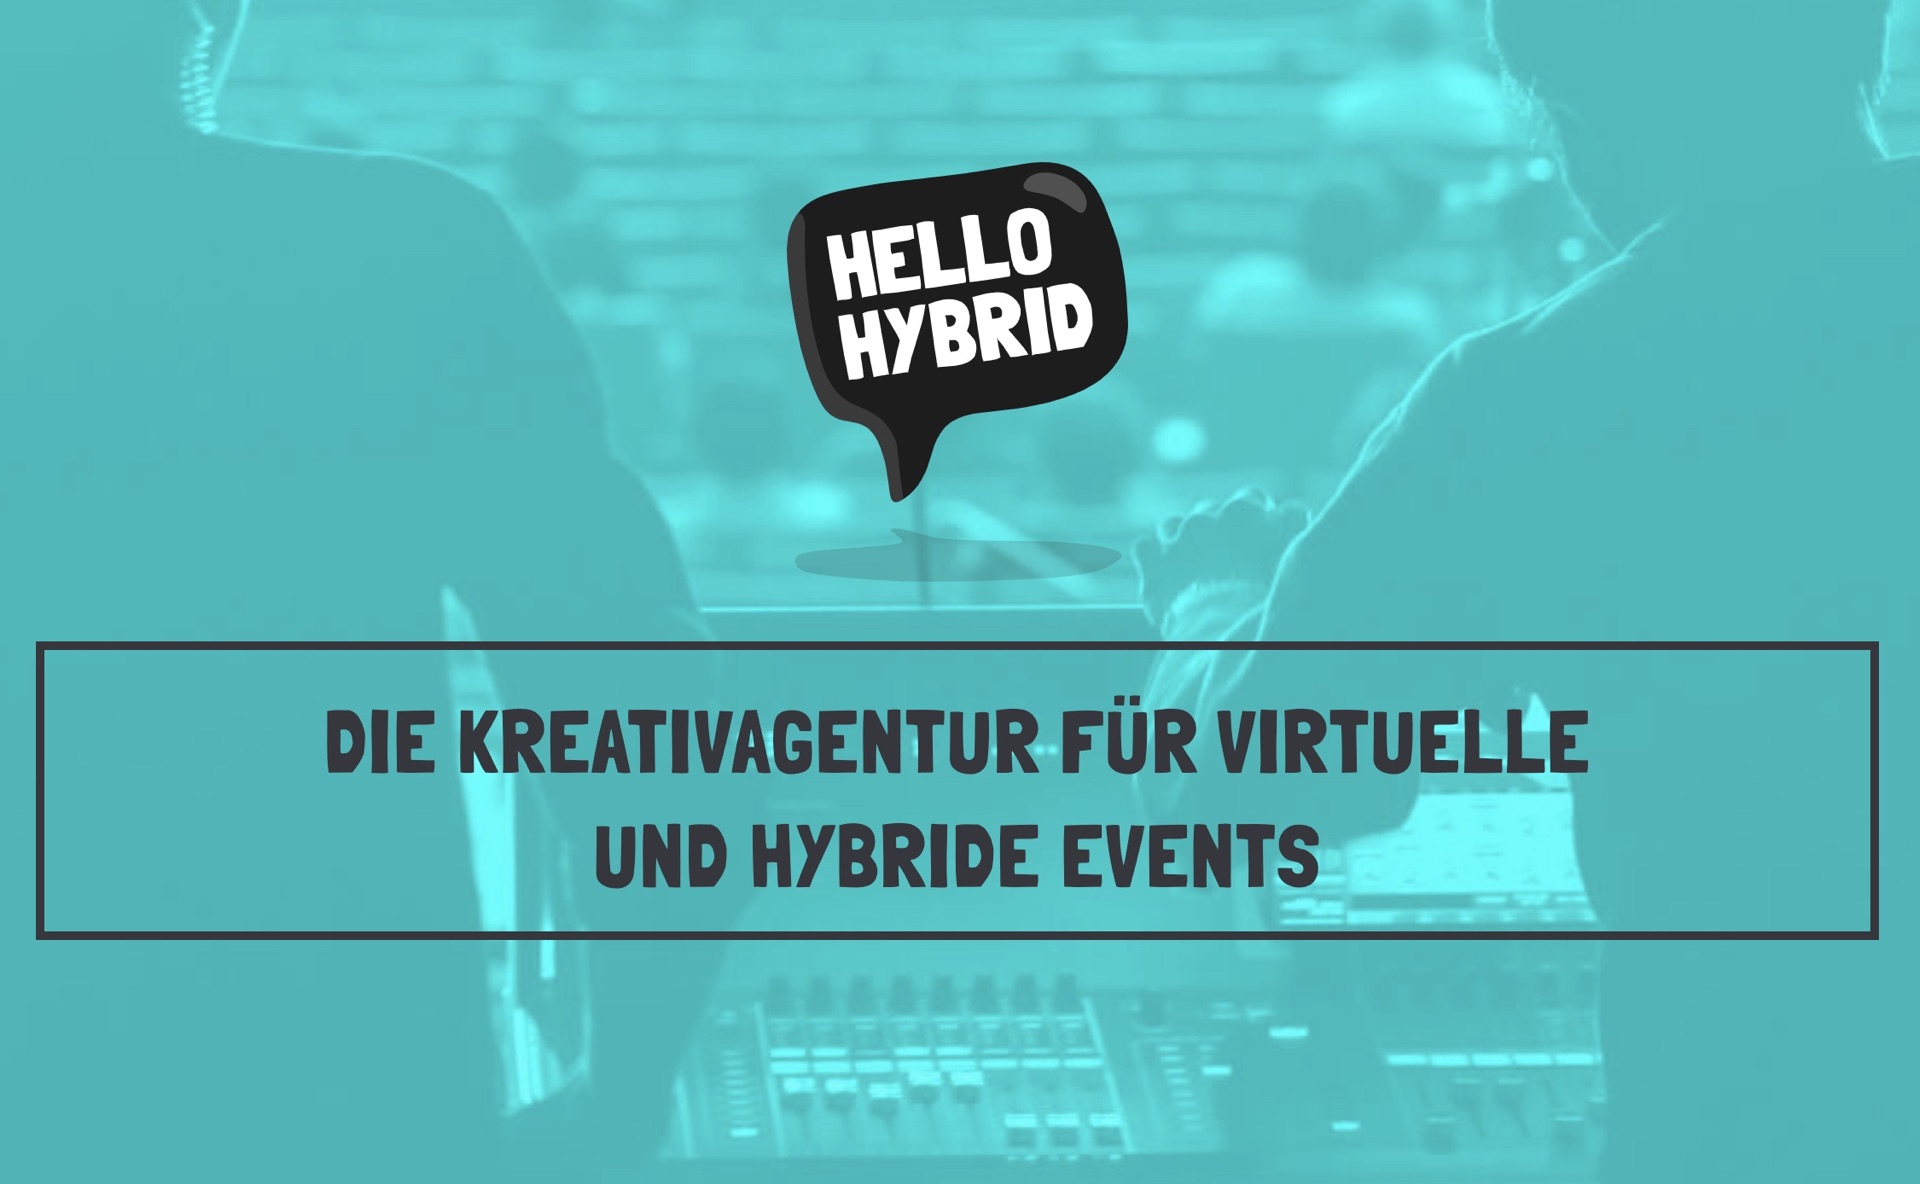 WE DO und TV-Moderatorin Astrid Frohloff gründen die Kreativagentur HelloHybrid